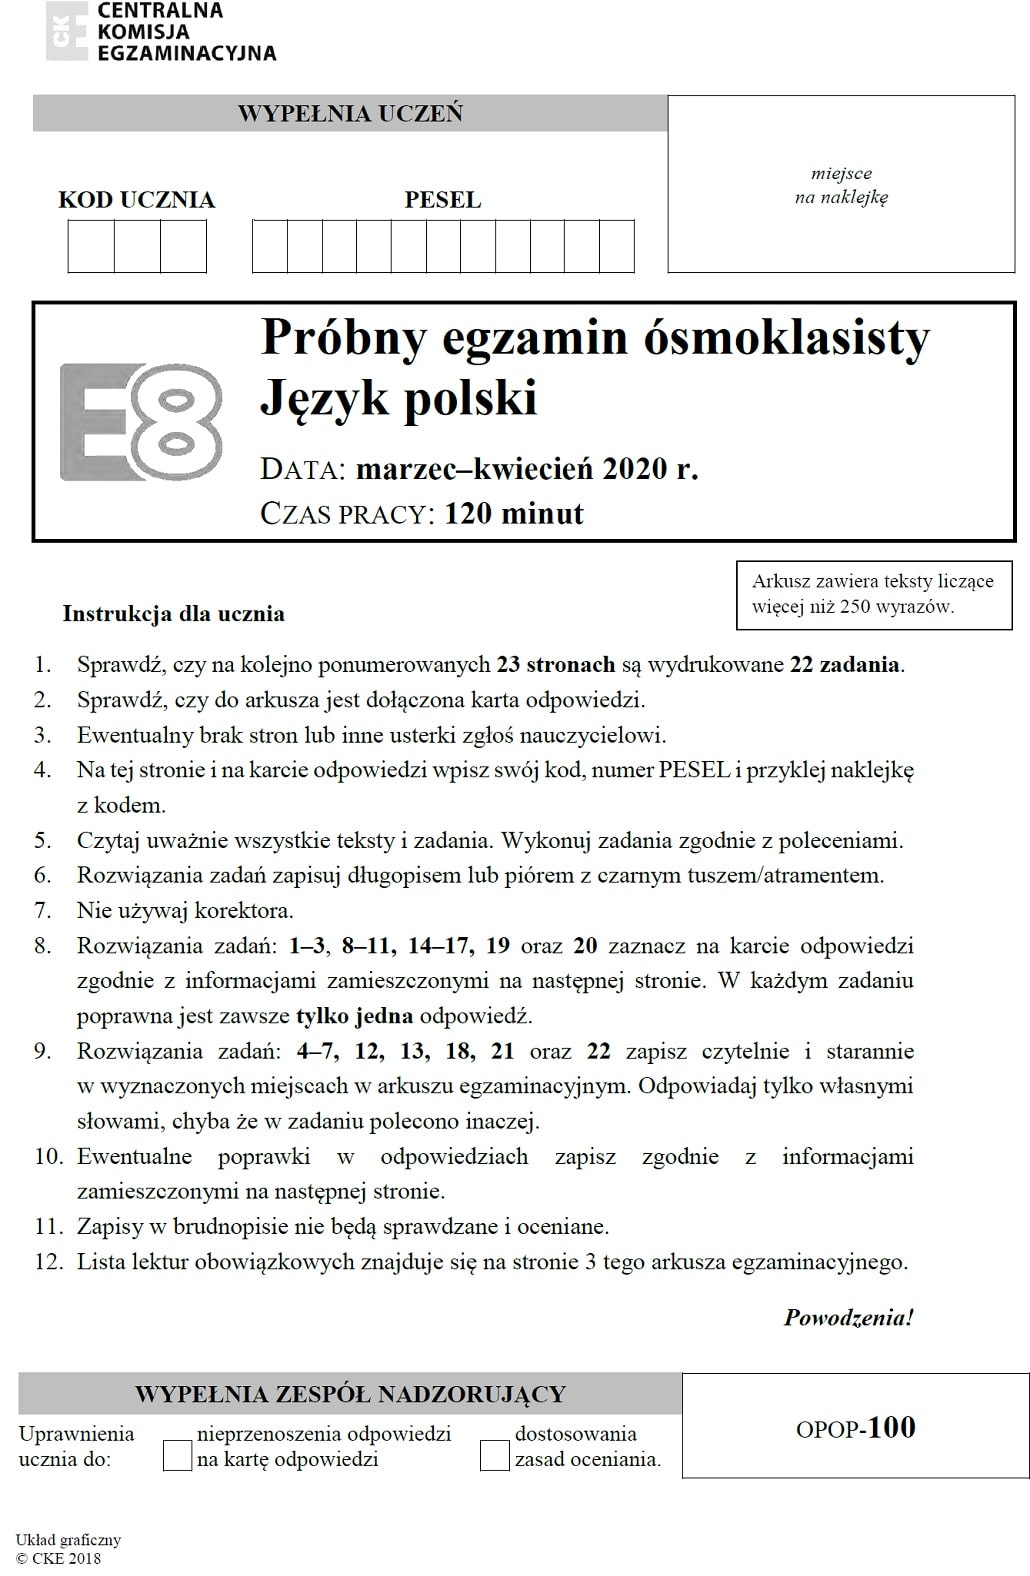 Pierwsza strona prbnego arkusza z j polskiego egzaminu smoklasisty